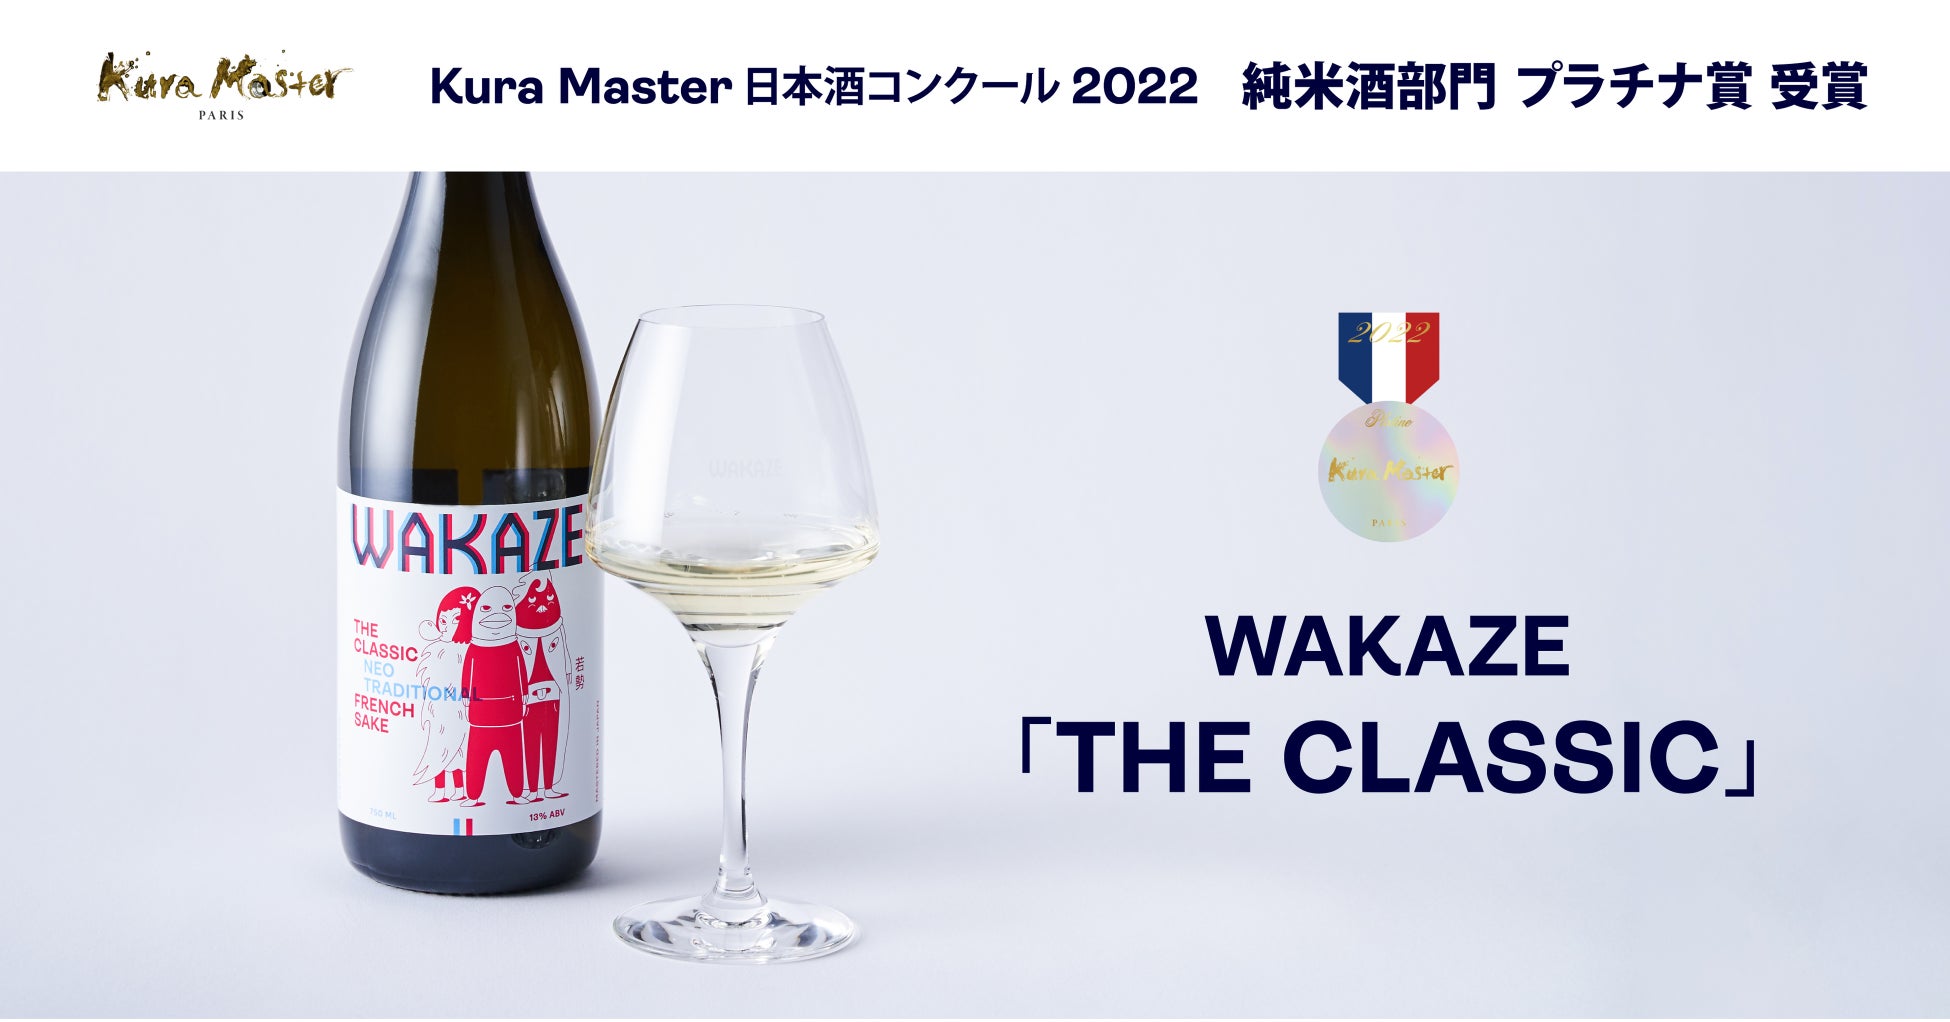 【海外醸造酒で唯一】フランスの日本酒品評会「Kura Master日本酒コンクール2022」にて、WAKAZEのフランス産SAKE「THE CLASSIC」がプラチナ賞を受賞！